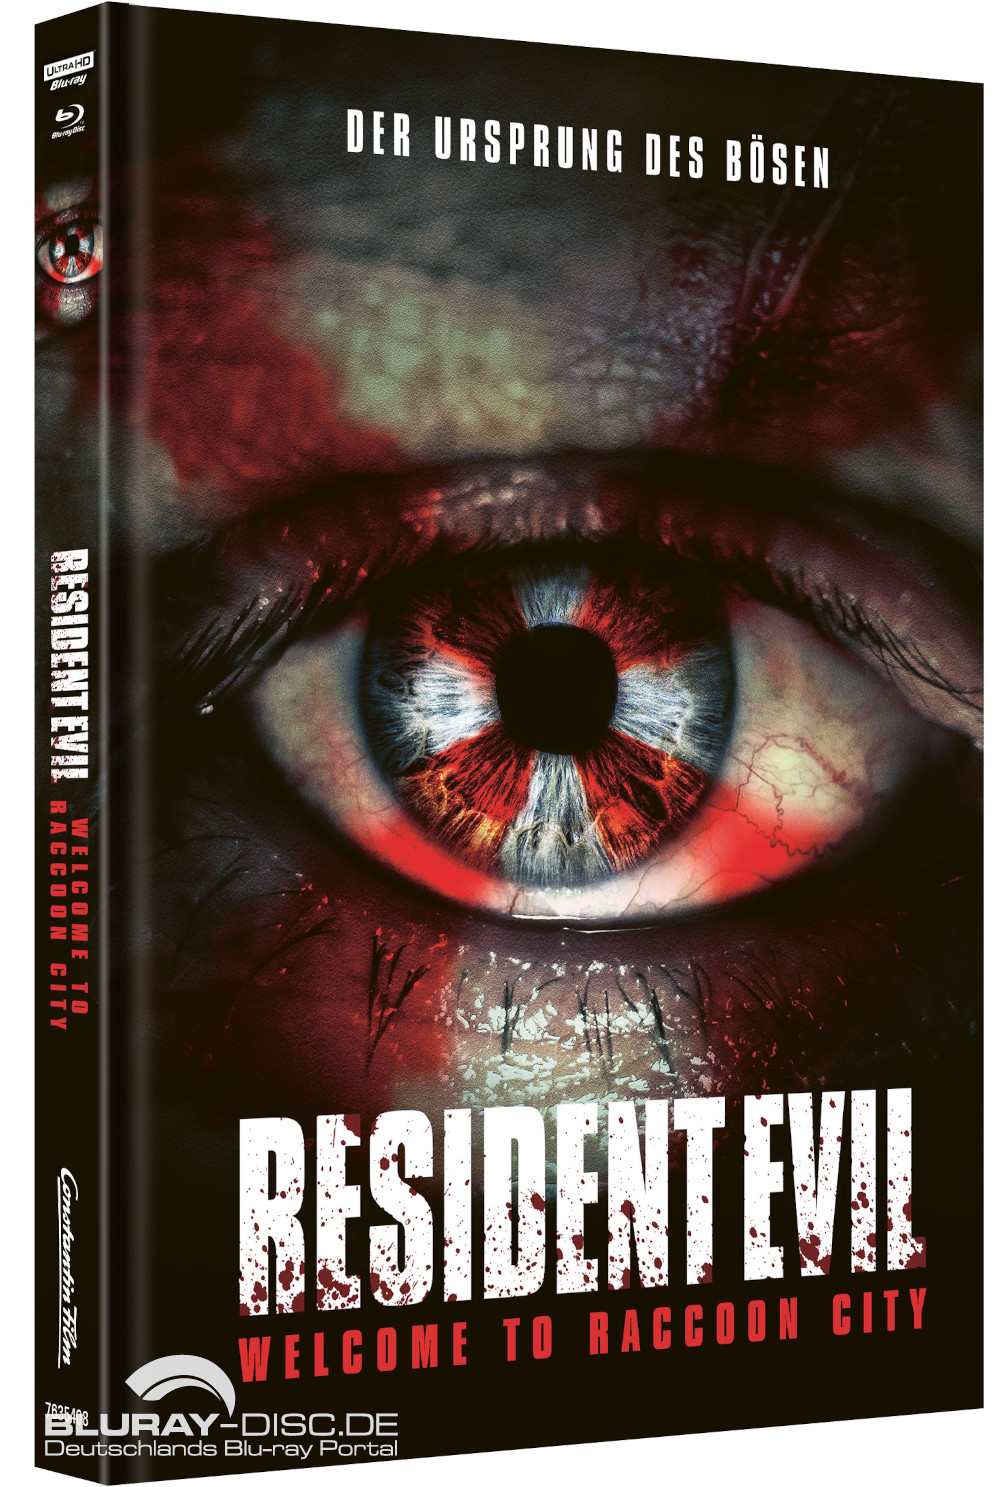 Resident-Evil-Welcome-to-Raccoon-City-4K-Mediabook-B-Galerie-01.jpg